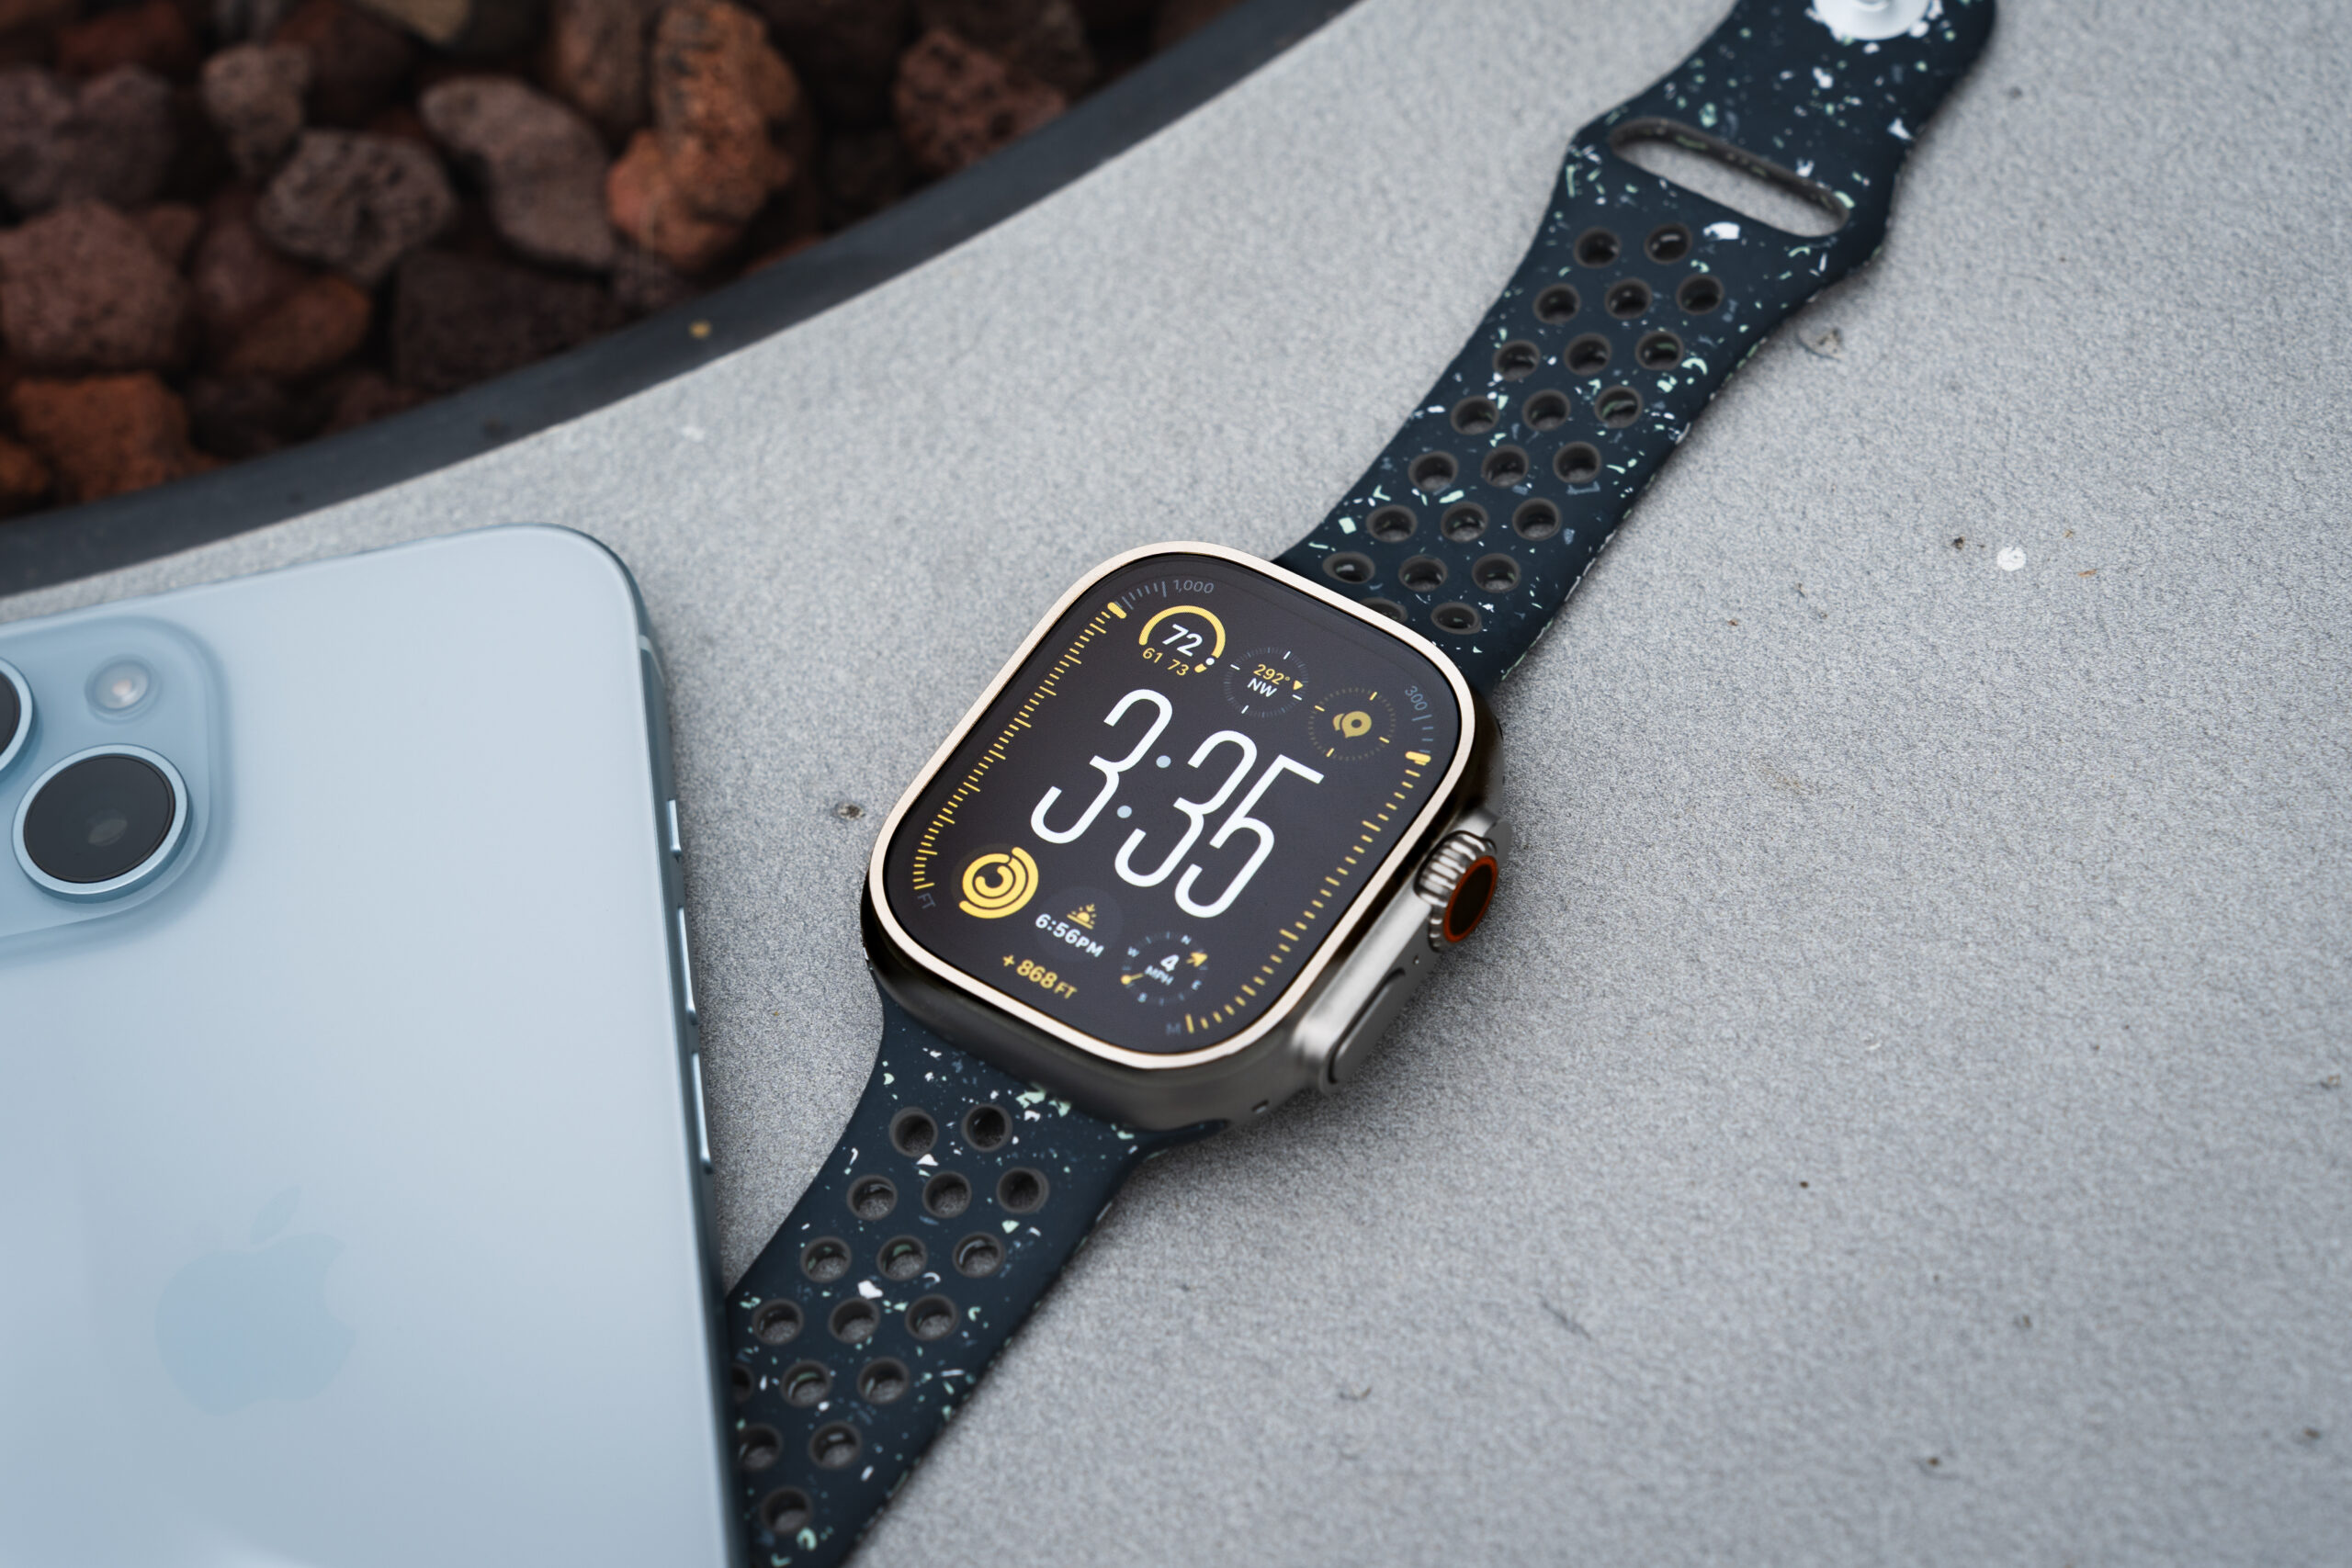 بررسی اپل واچ الترا 2، Apple Watch Ultra 2